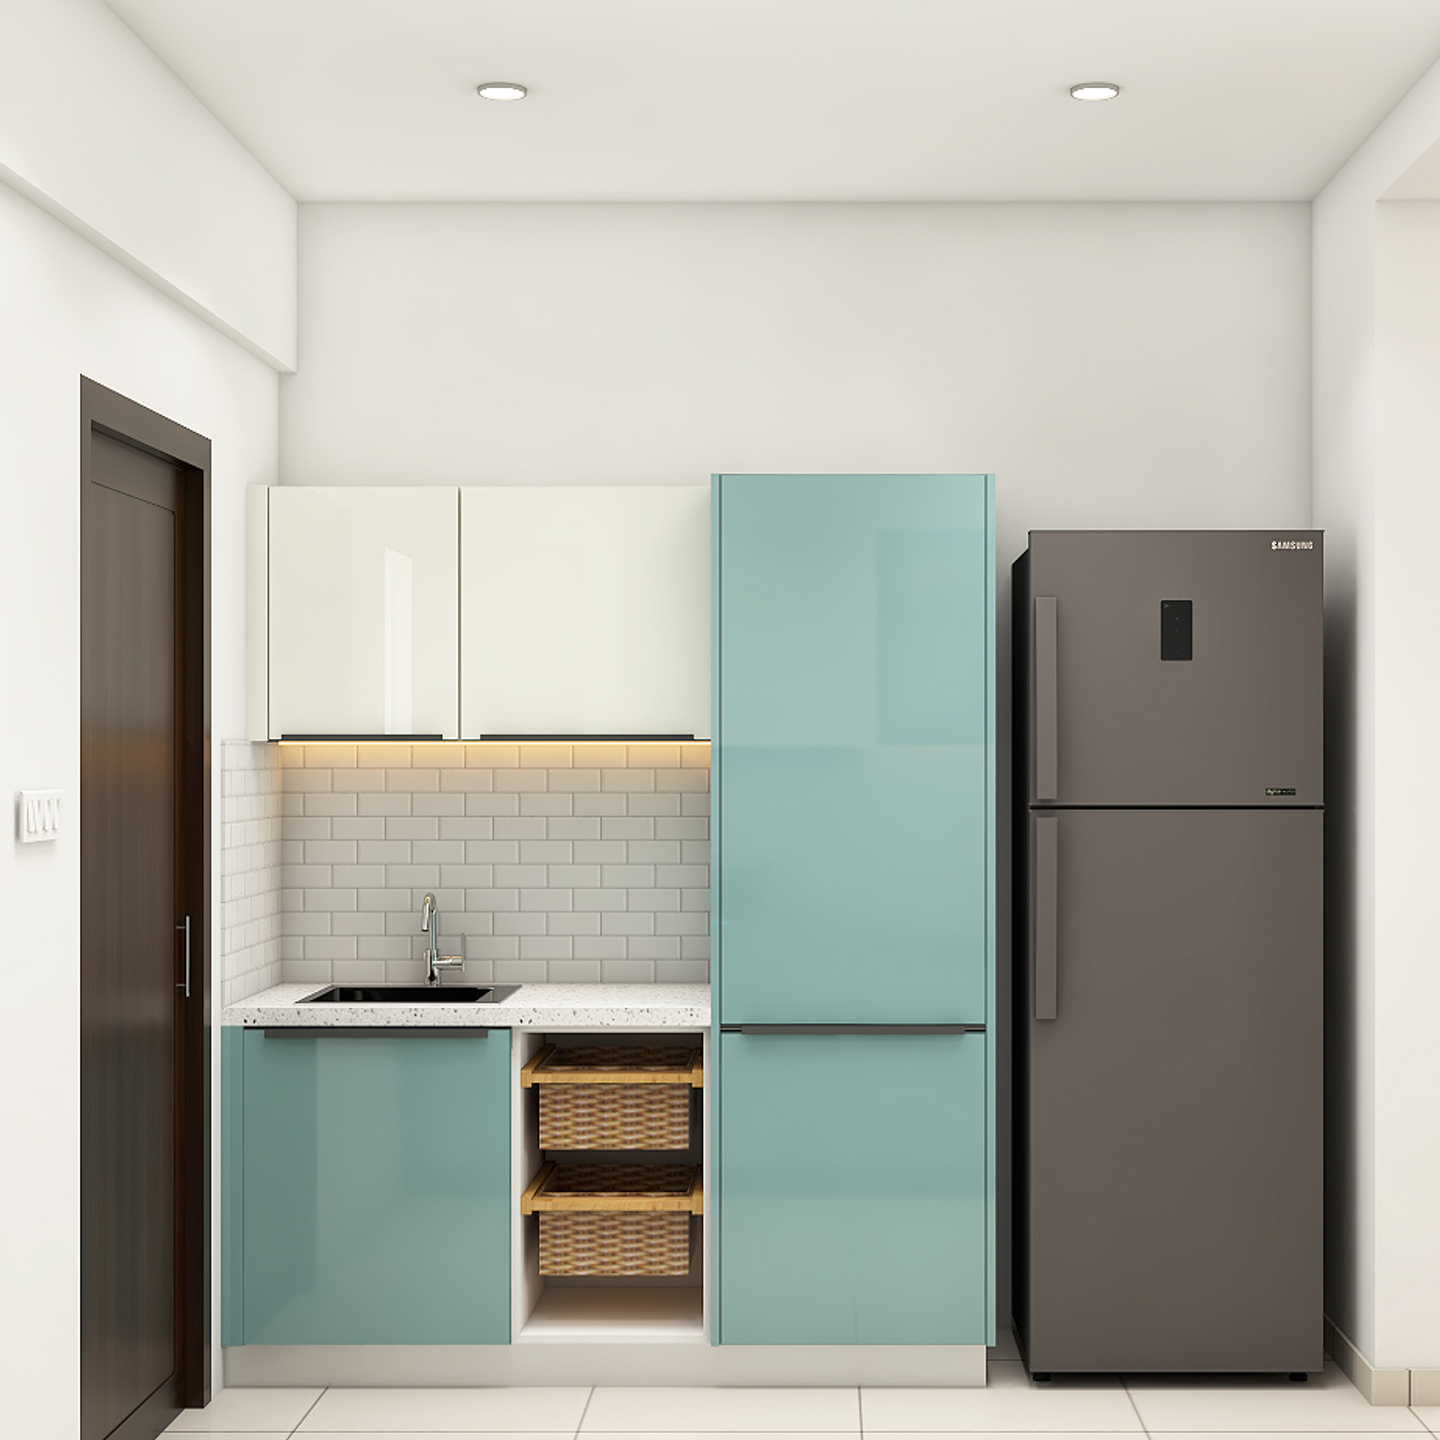 Blue & White Kitchen Design - Livspace